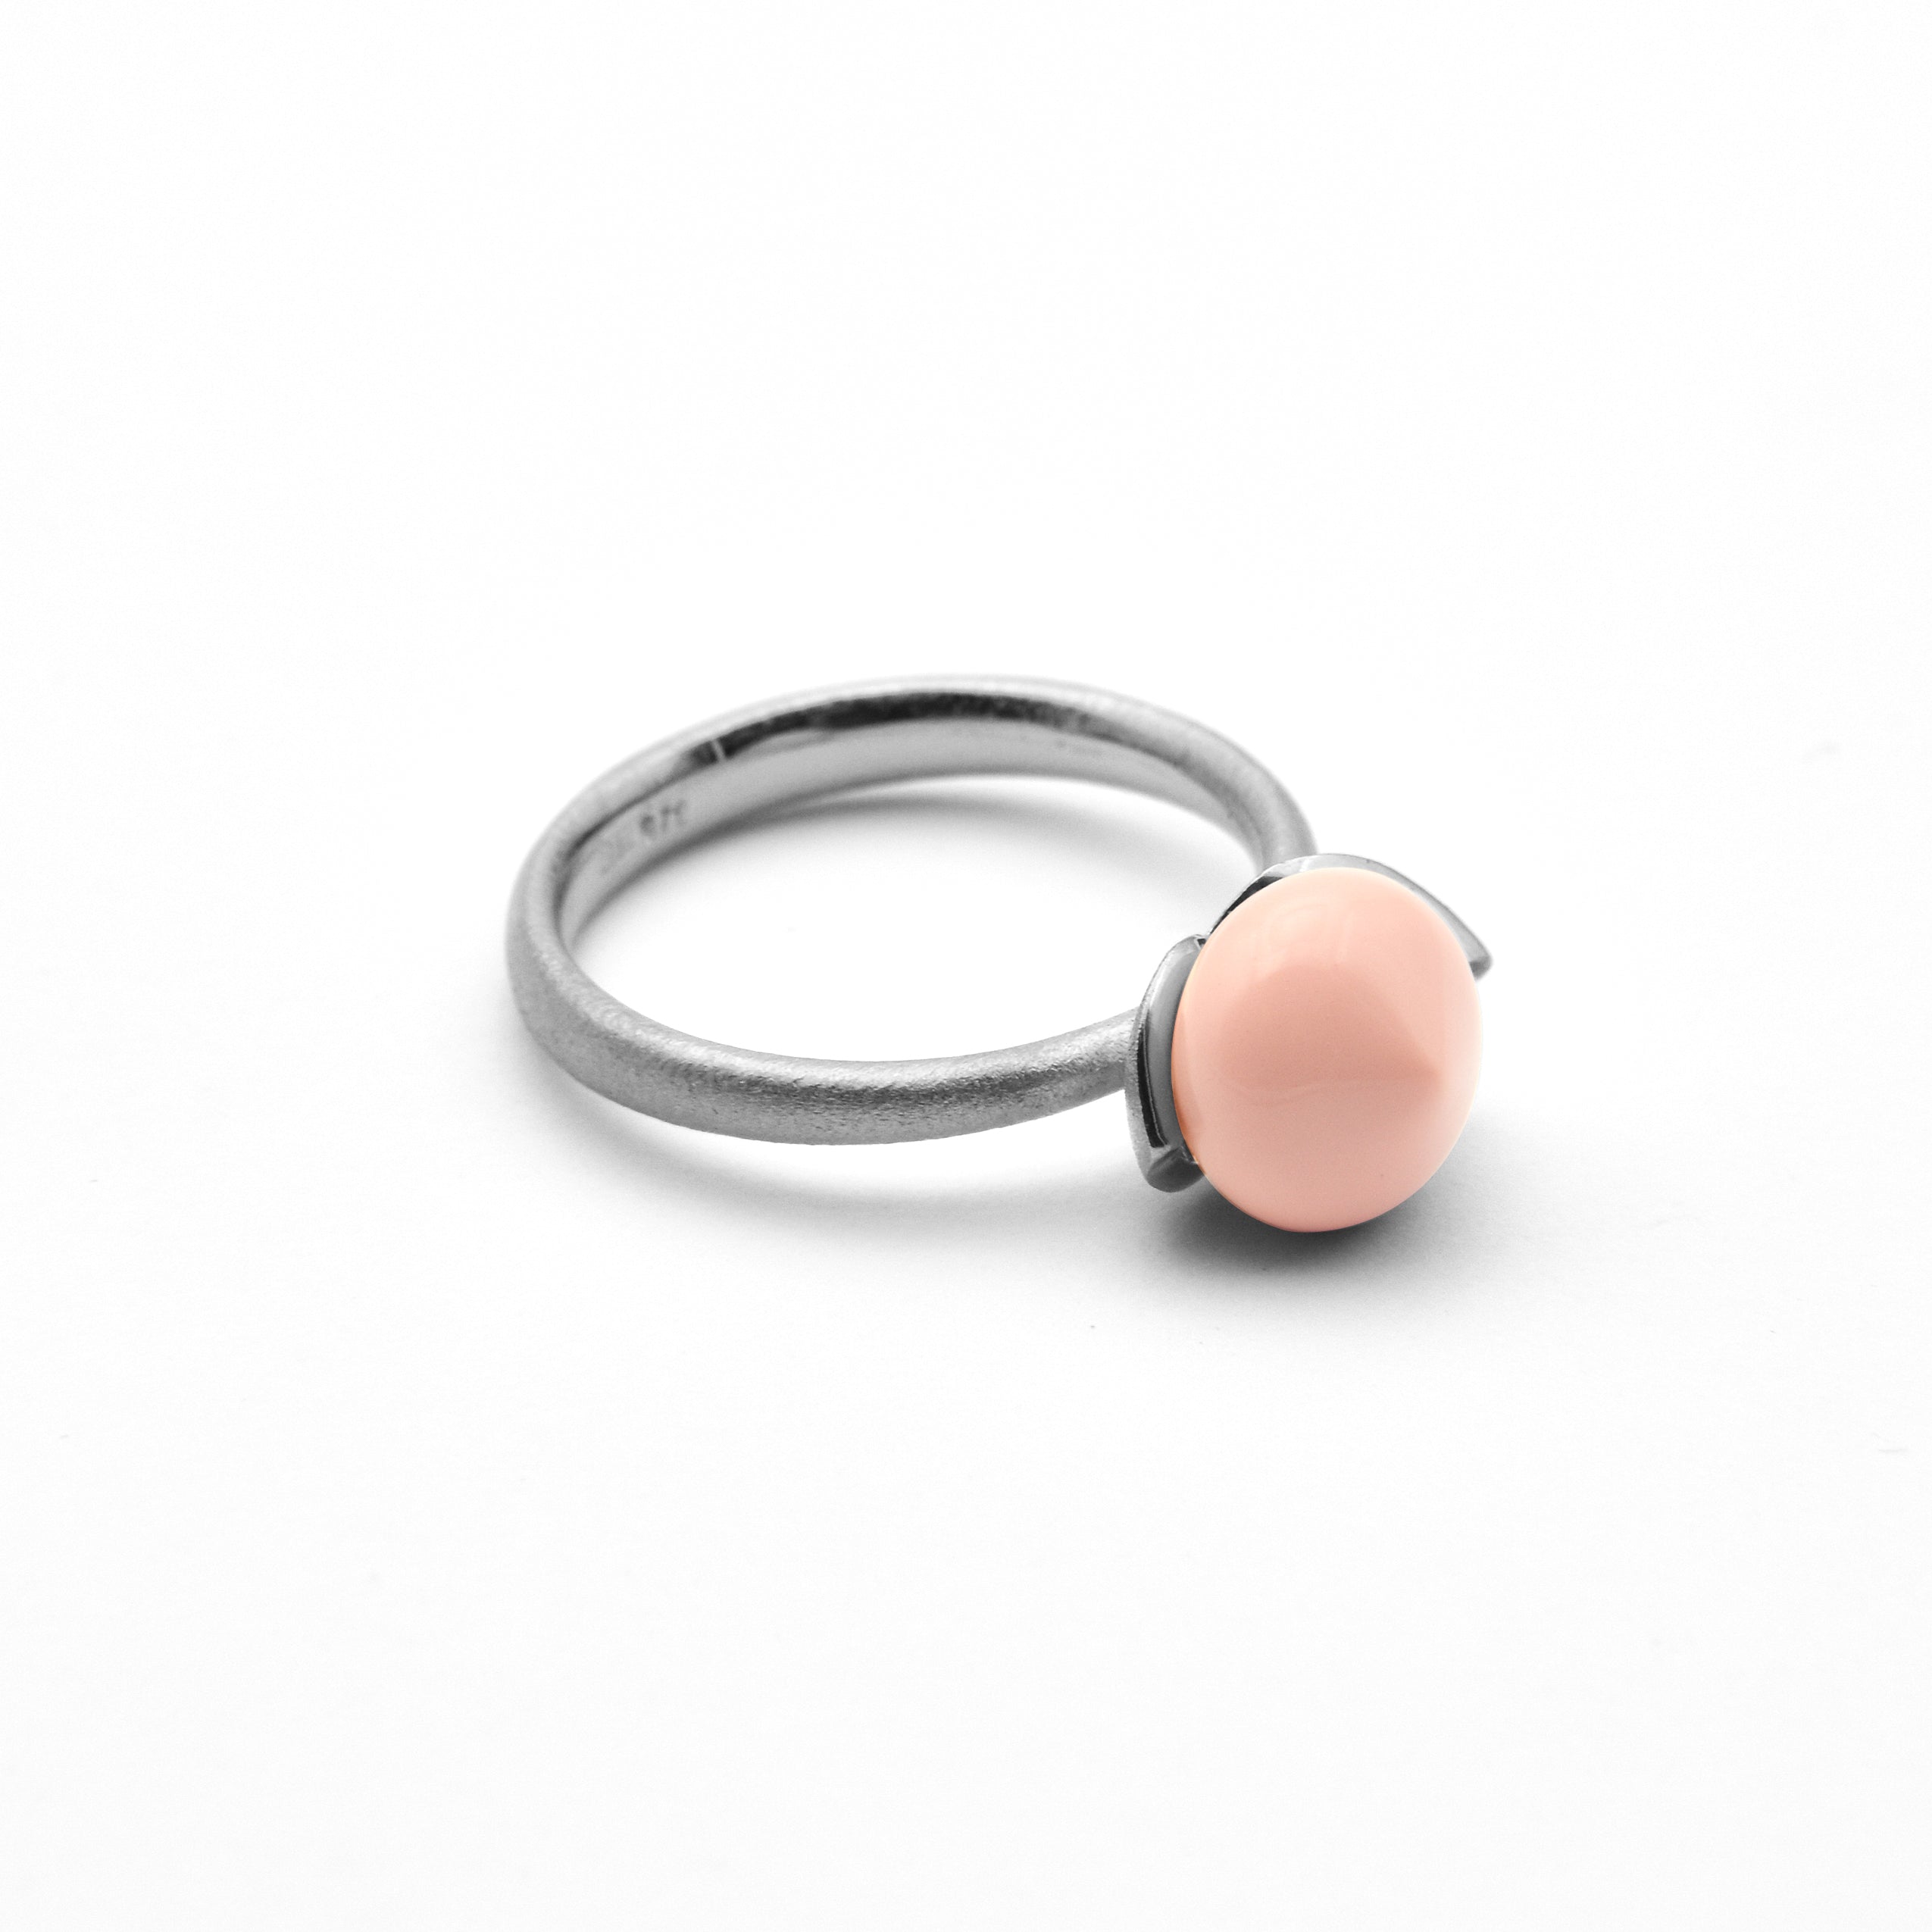 Dolce ring "smal" med korallfärgat änglaskinn rec. 925/-